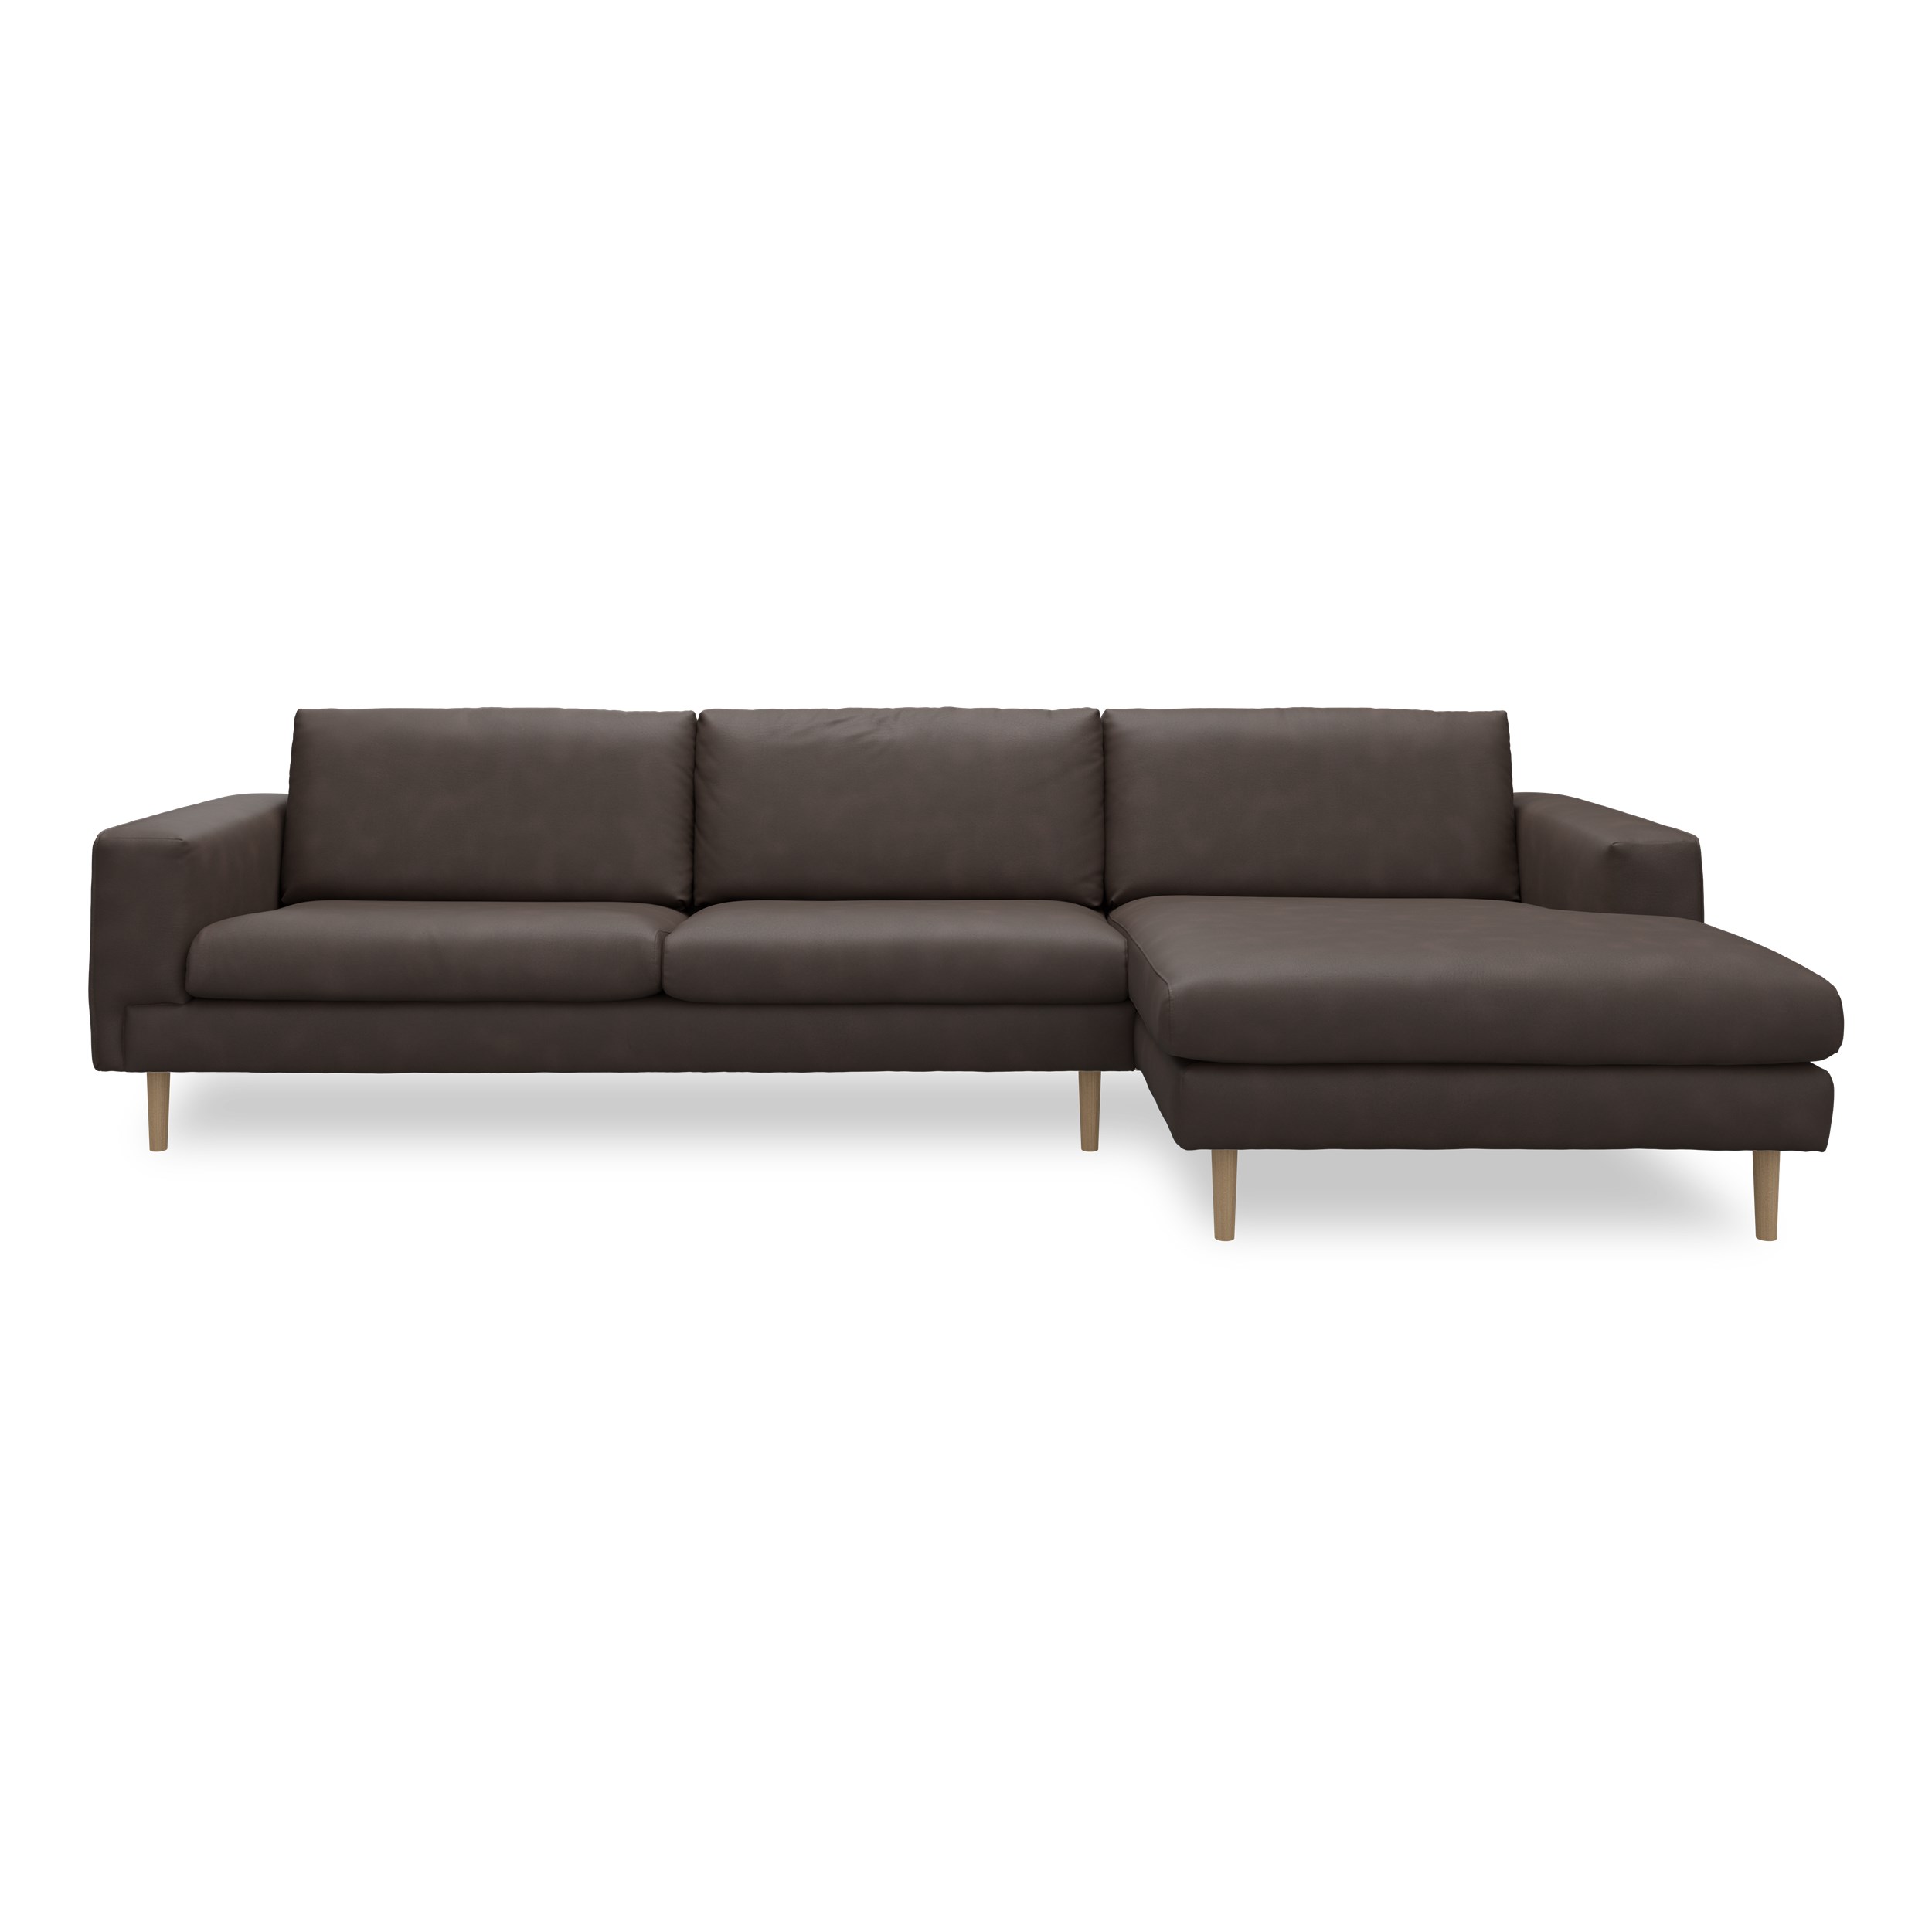 Nyland højrevendt sofa med chaiselong - Kentucky 1 earth bonded læder, Ben no. 141 i lakeret massiv eg og S: Koldskum R:Koldskum med fiberfyld